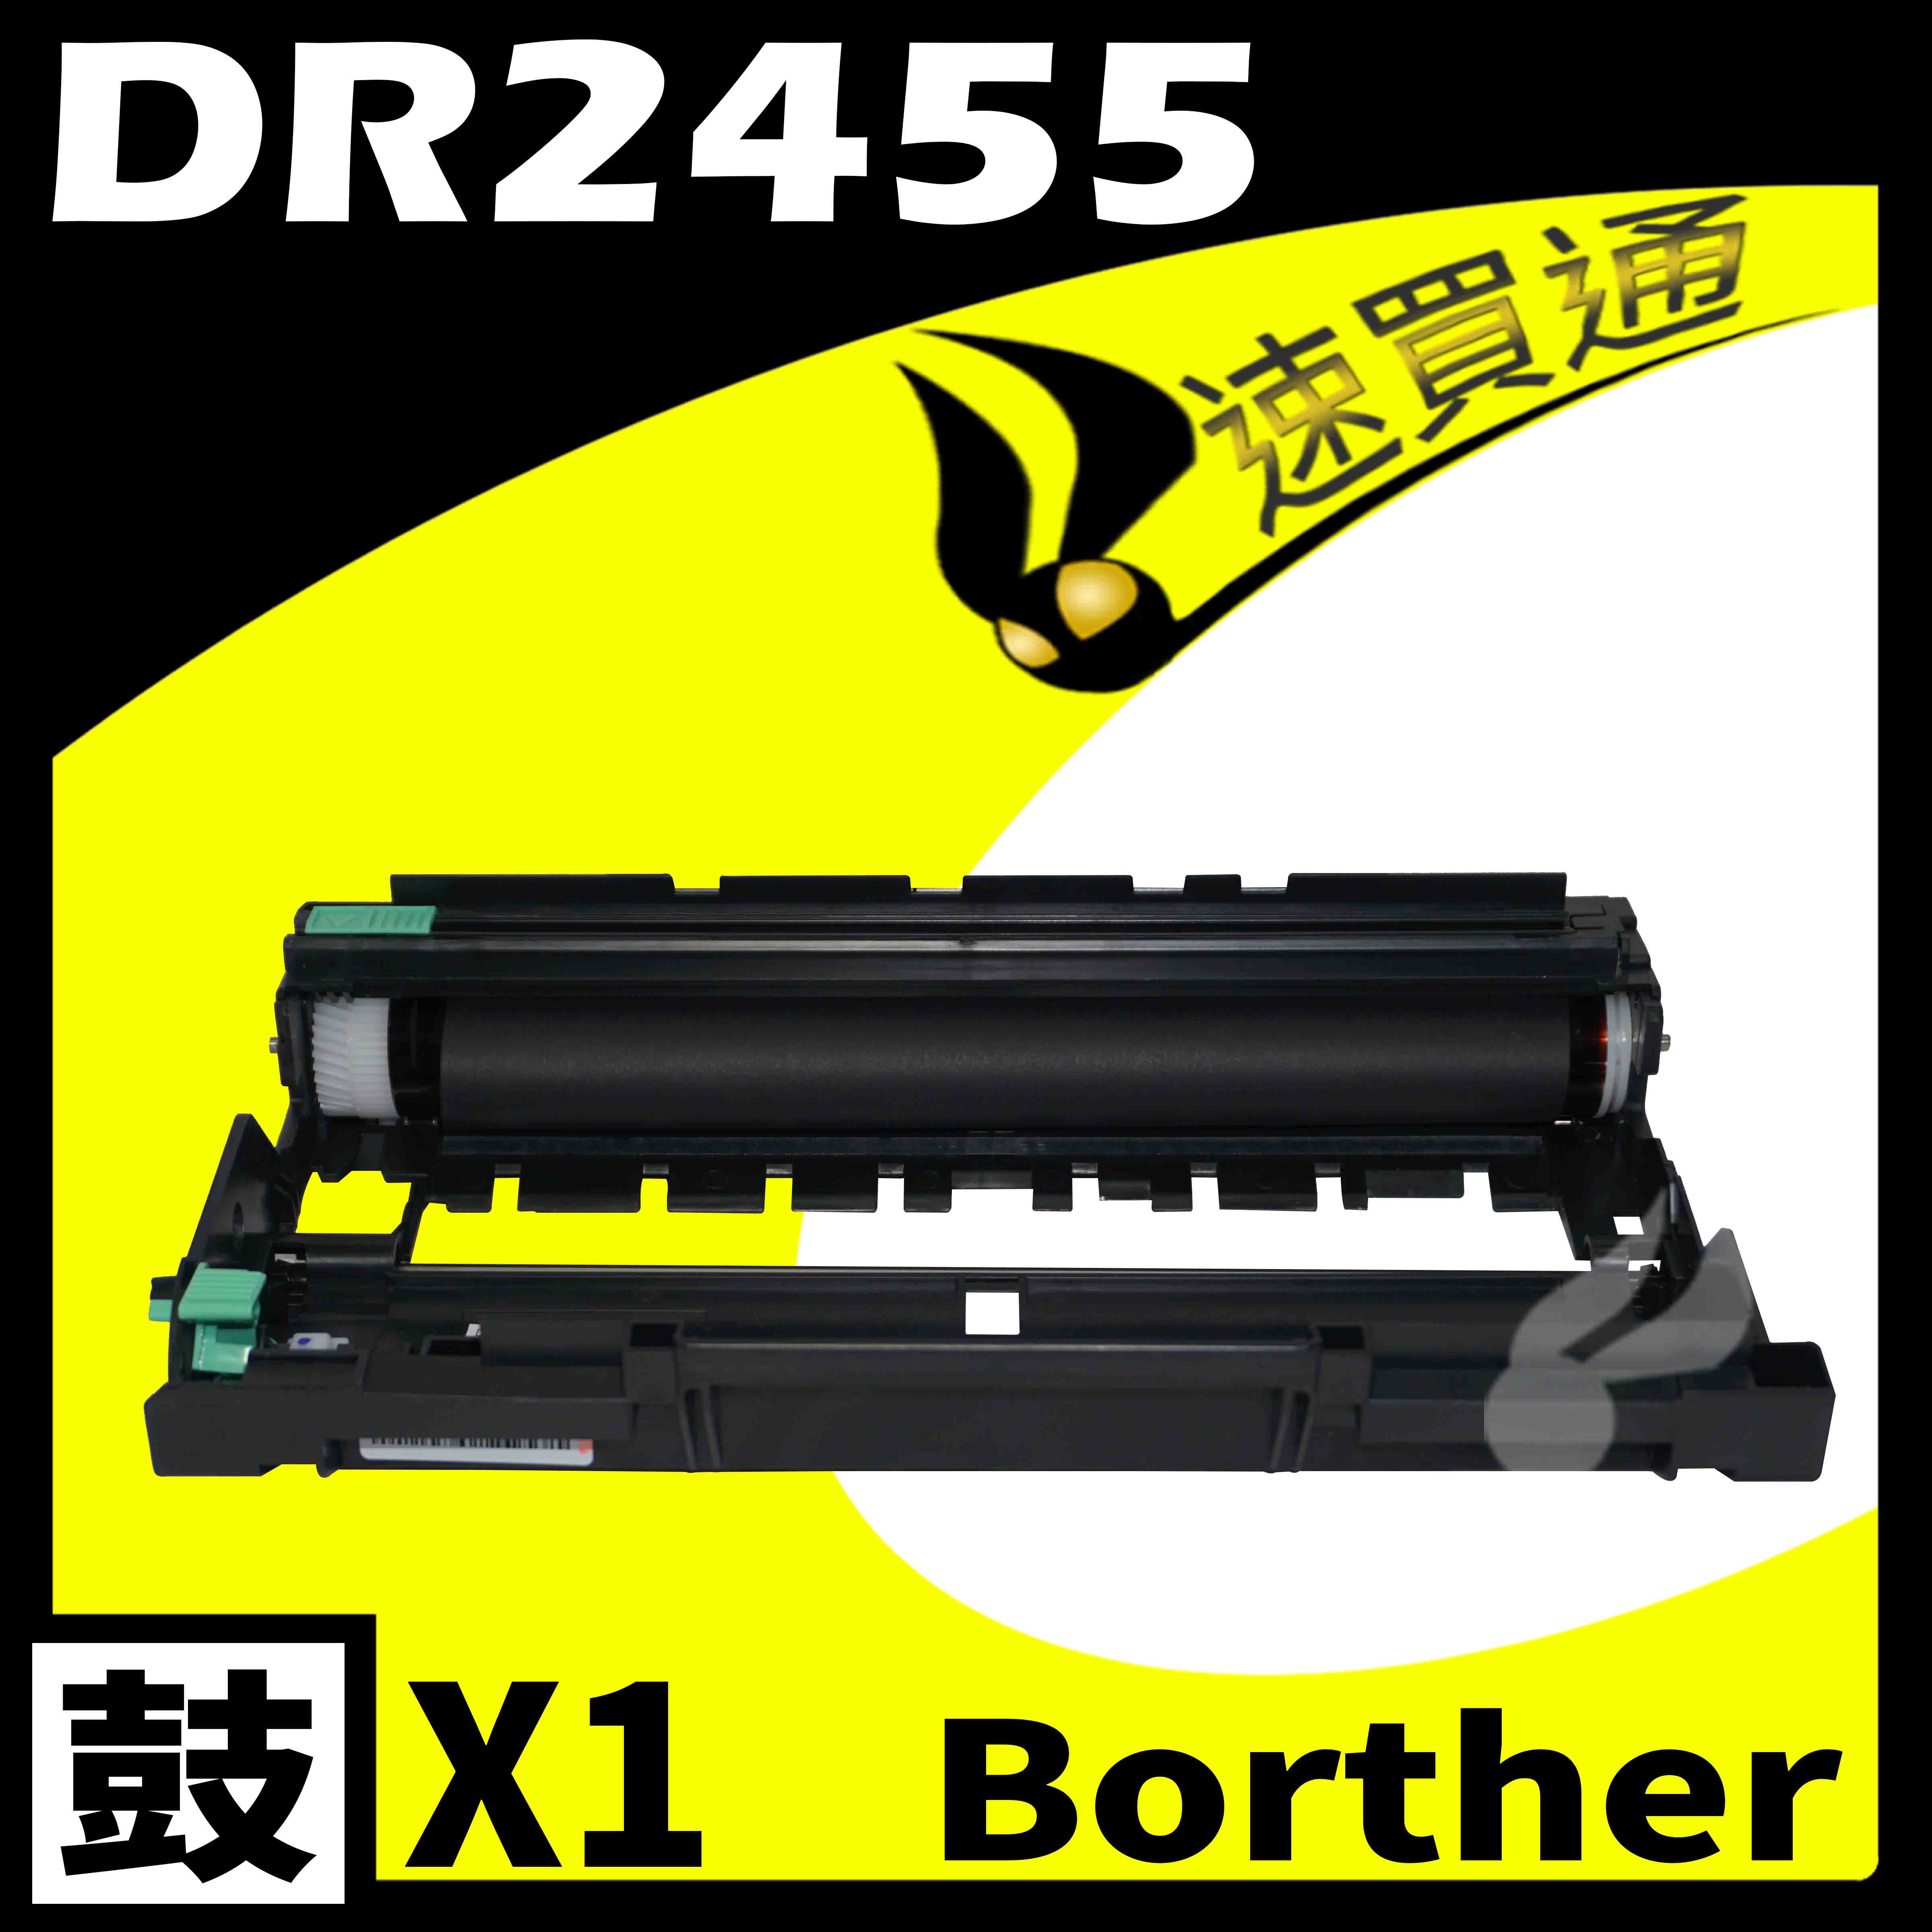 【速買通】Brother DR-2455/DR2455 相容感光鼓匣 適用 HL-L2375DW/MFC-L2715DW/MFC-L2770DW